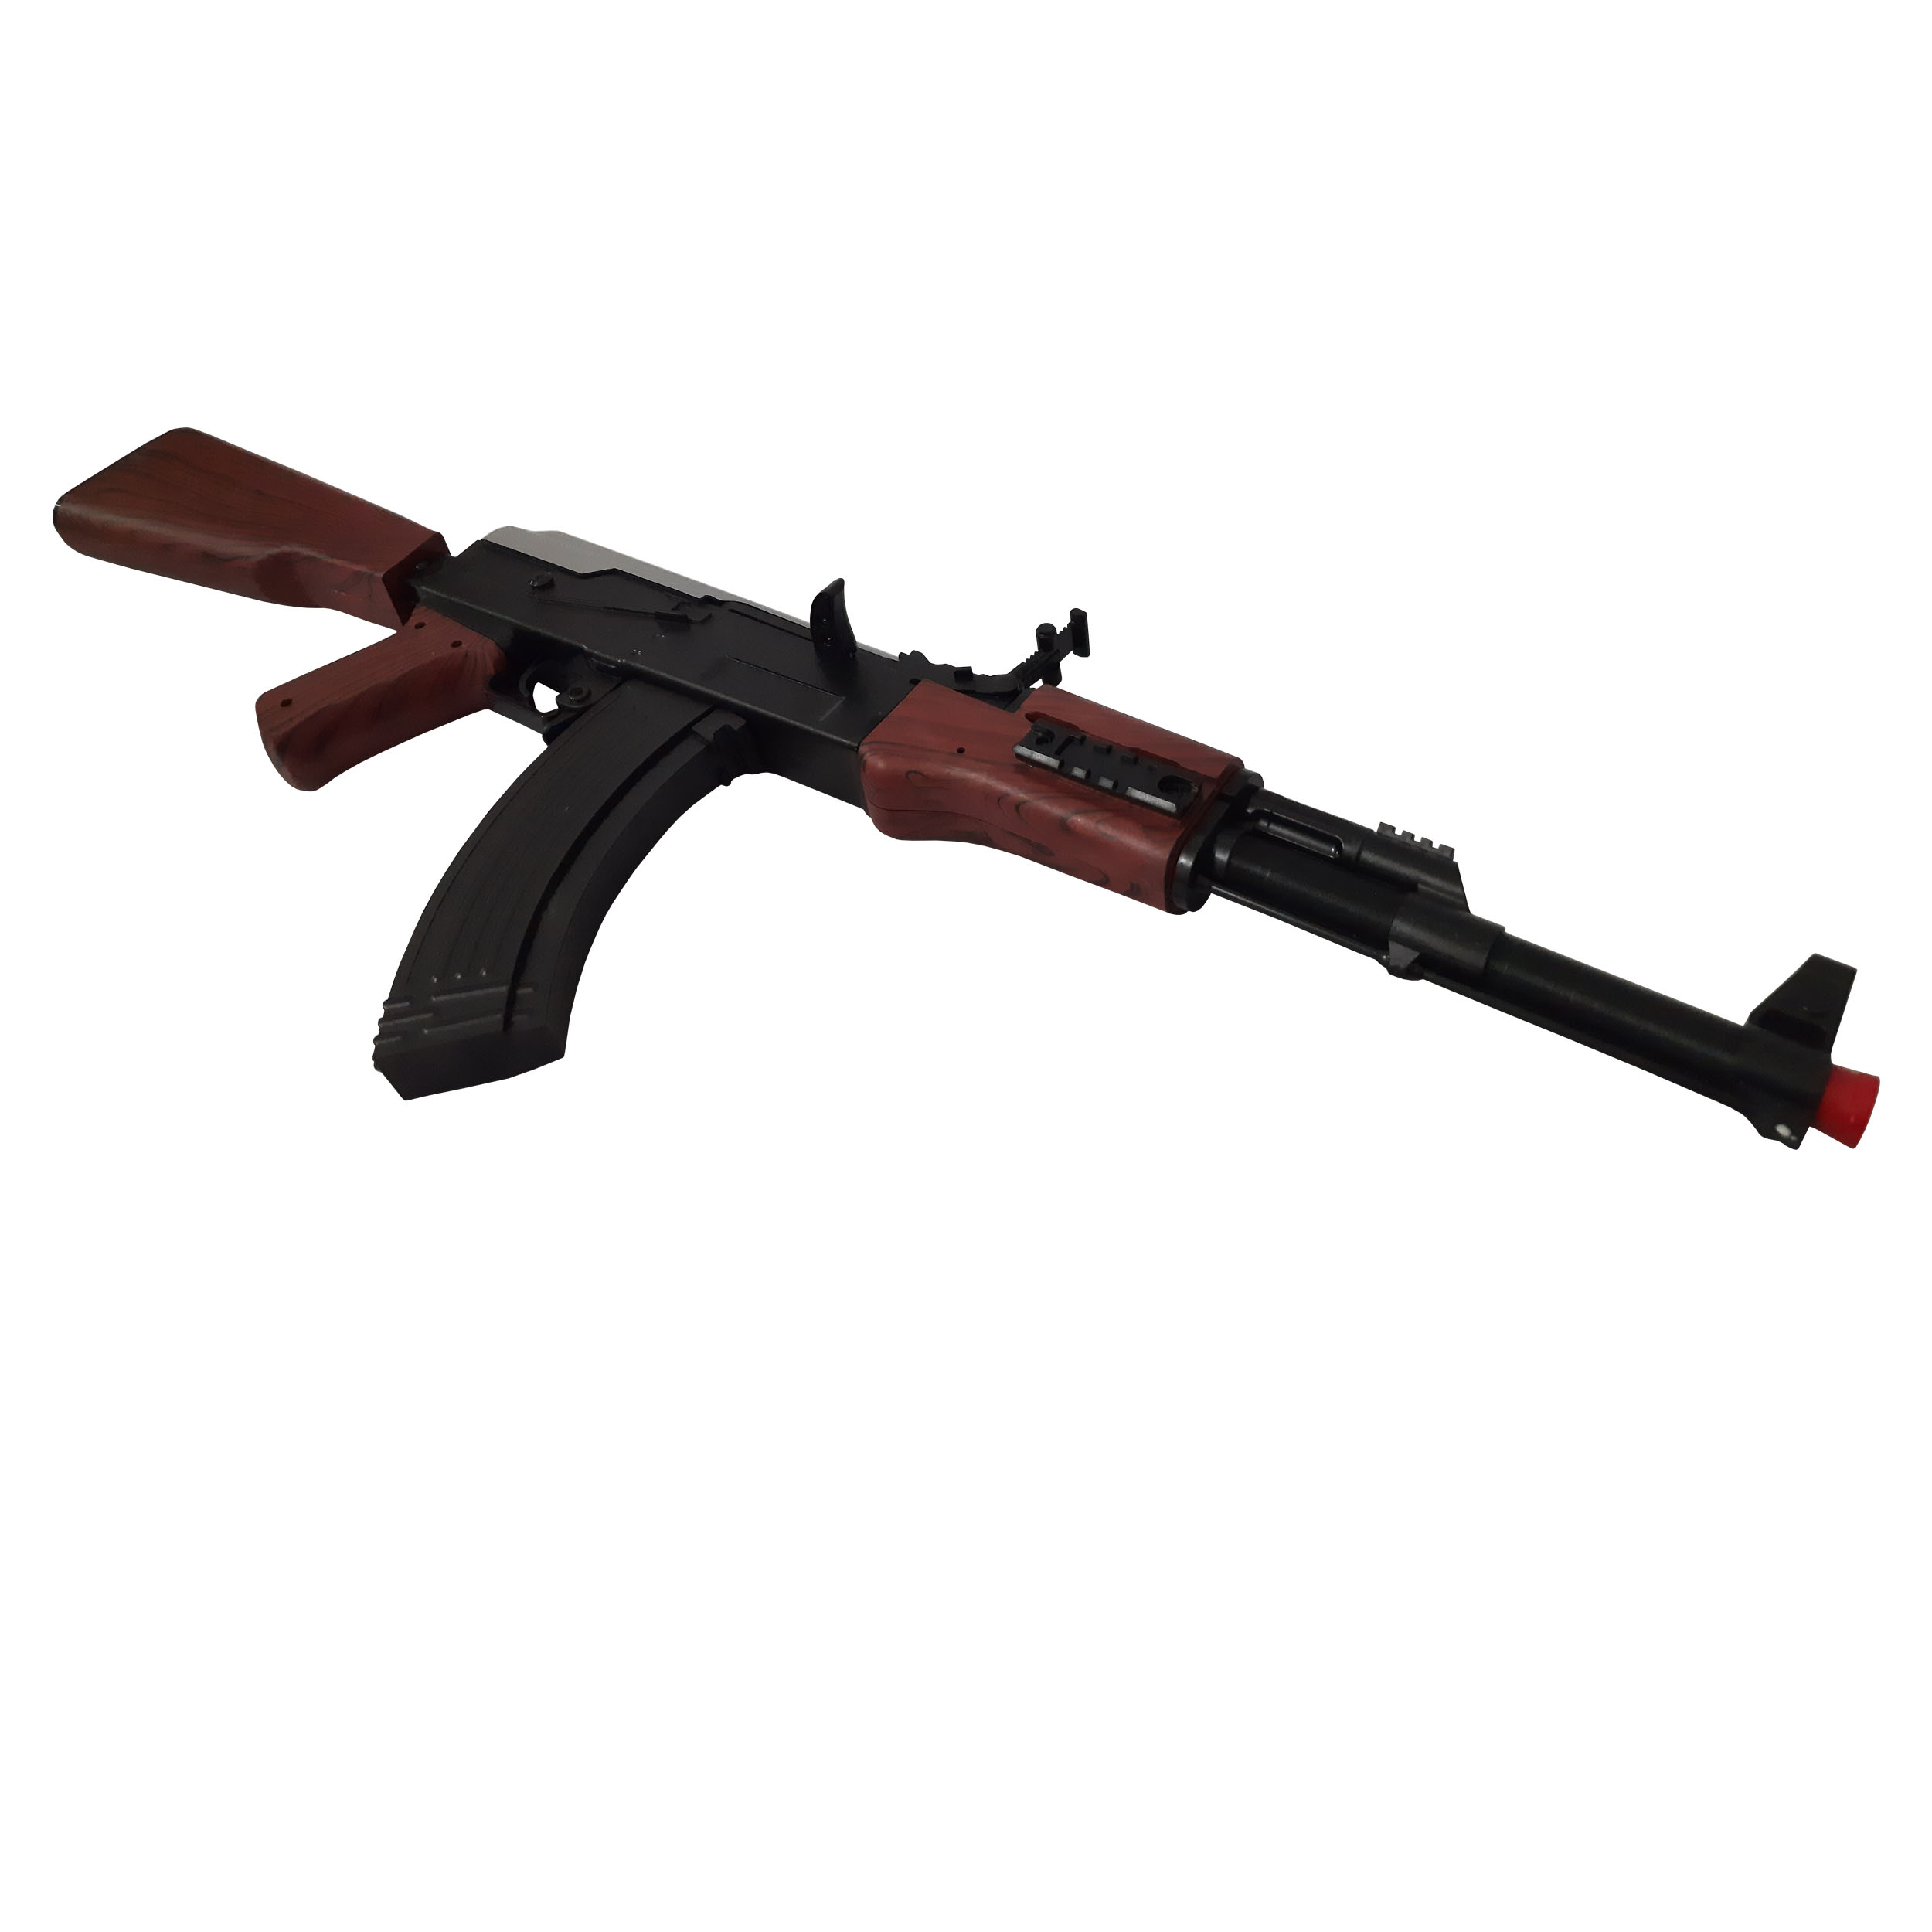 ✓ قیمت و مشخصات تفنگ بازی طرح کلاشینکف مدل AK123 کد 500 مجموعه 5 عددی -زیراکو ✓